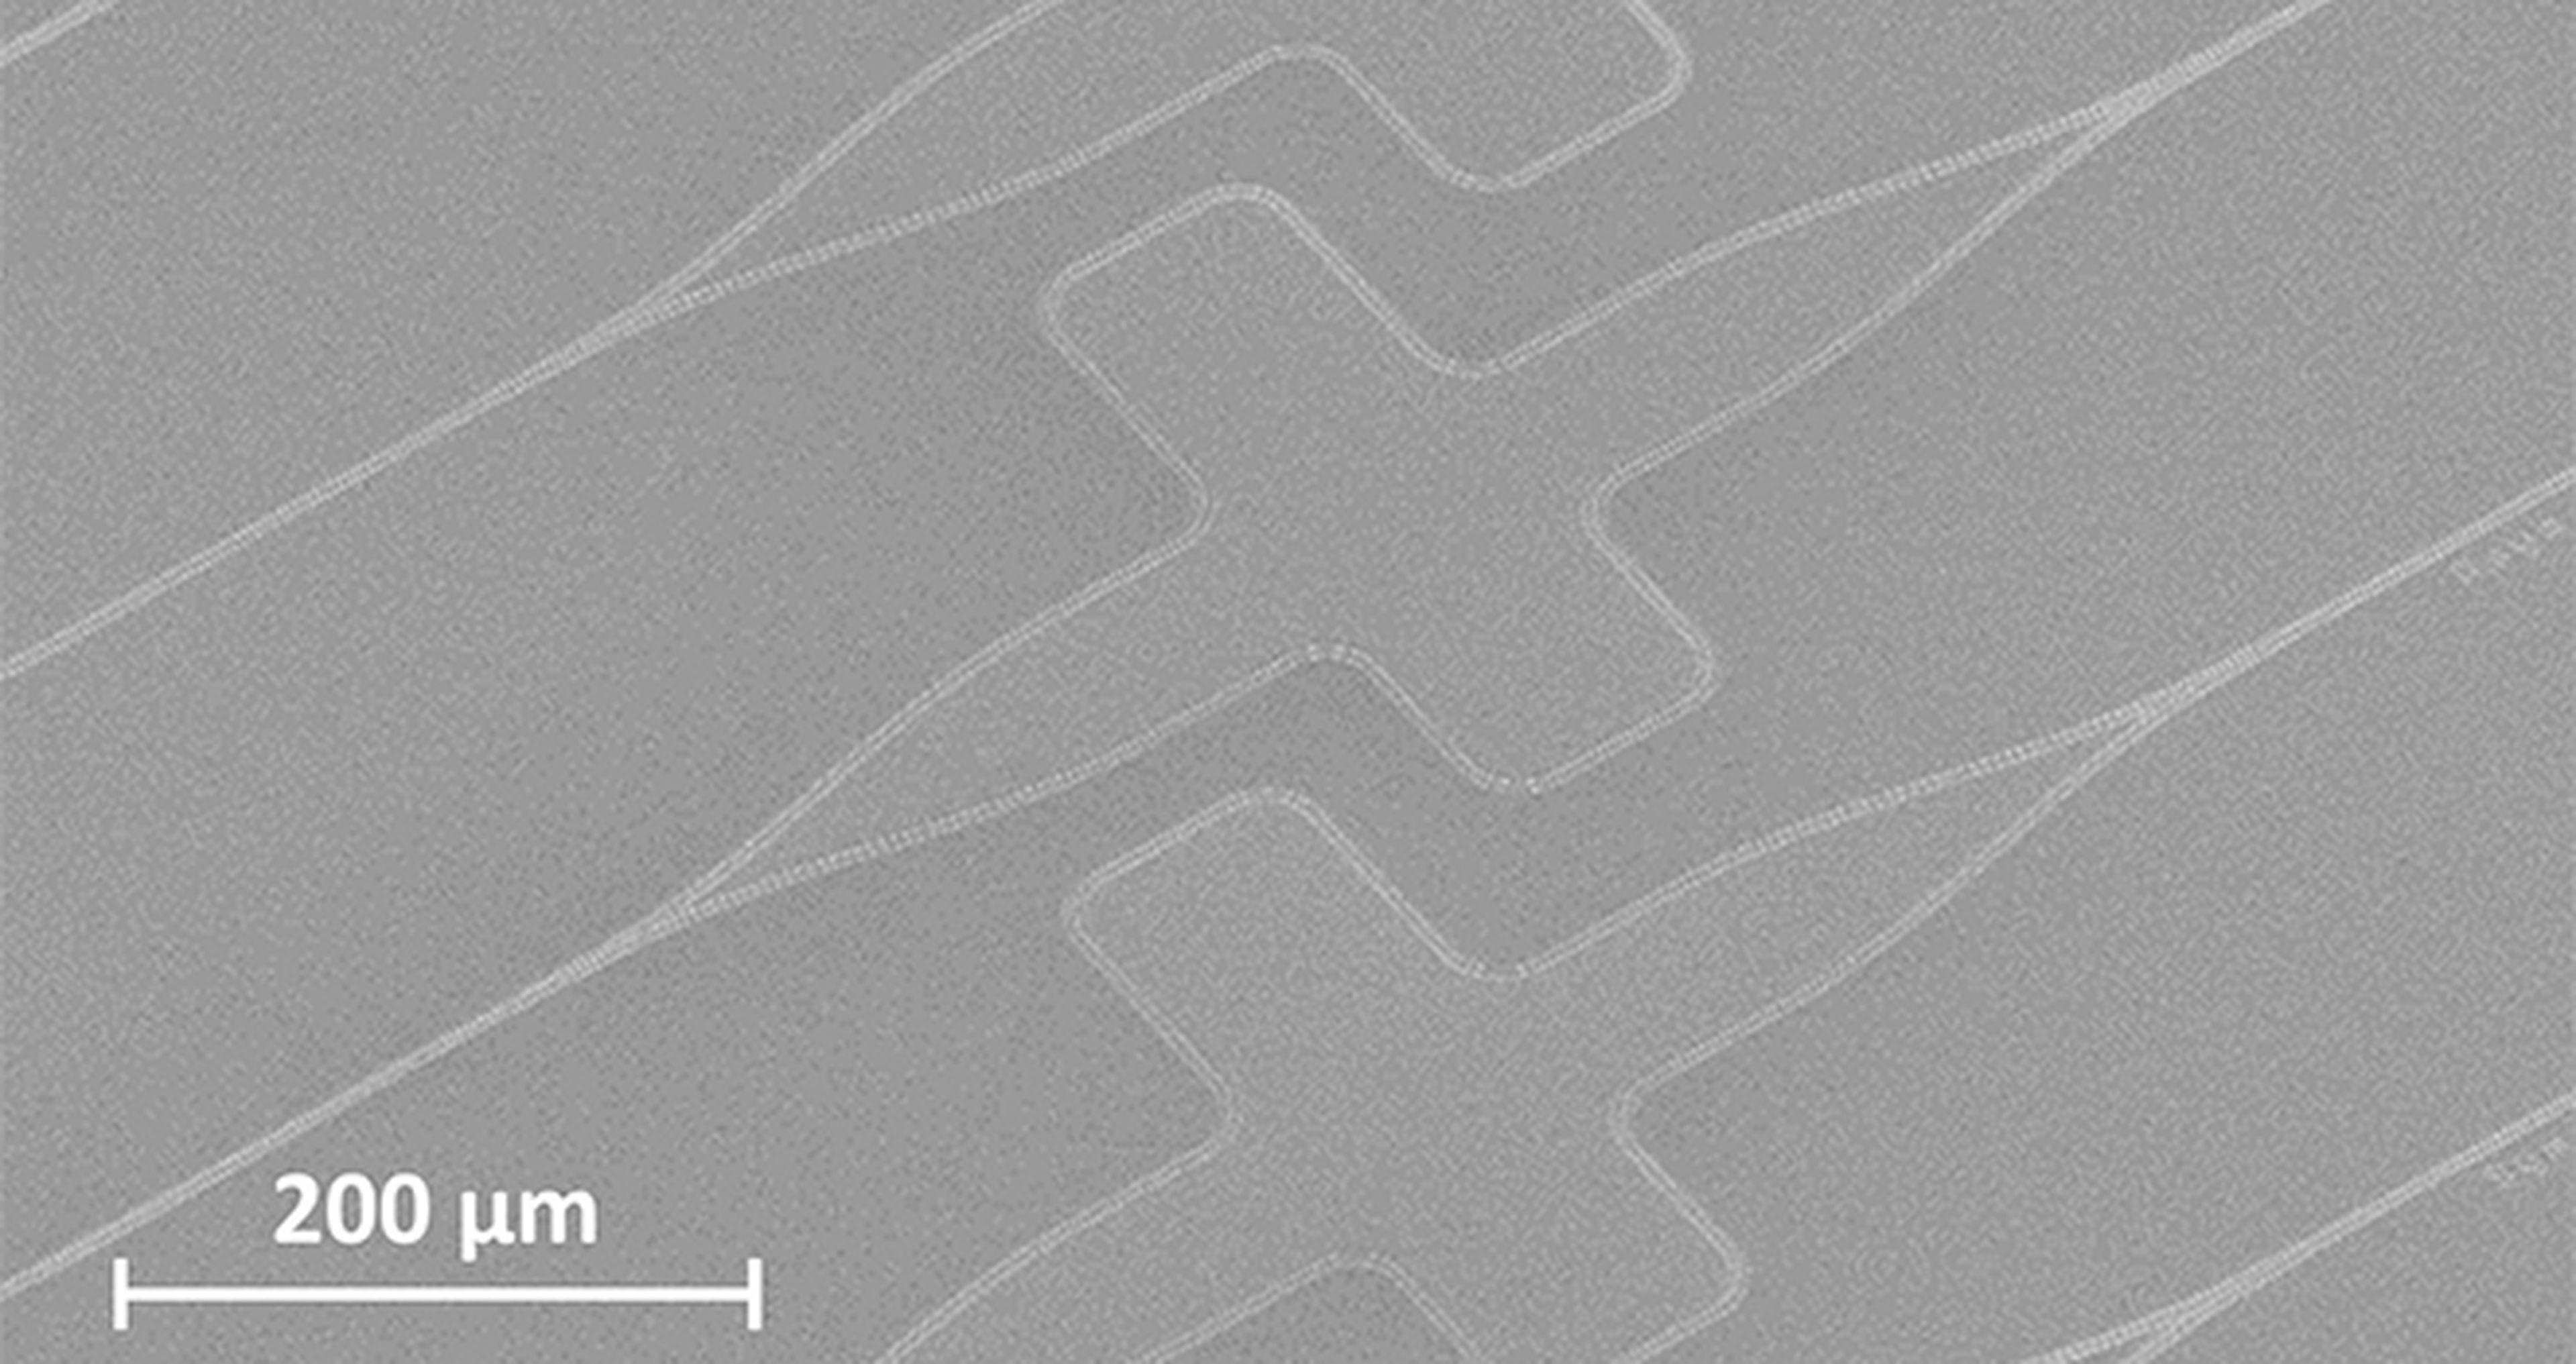 Chips fotónicos creados por el CSIC